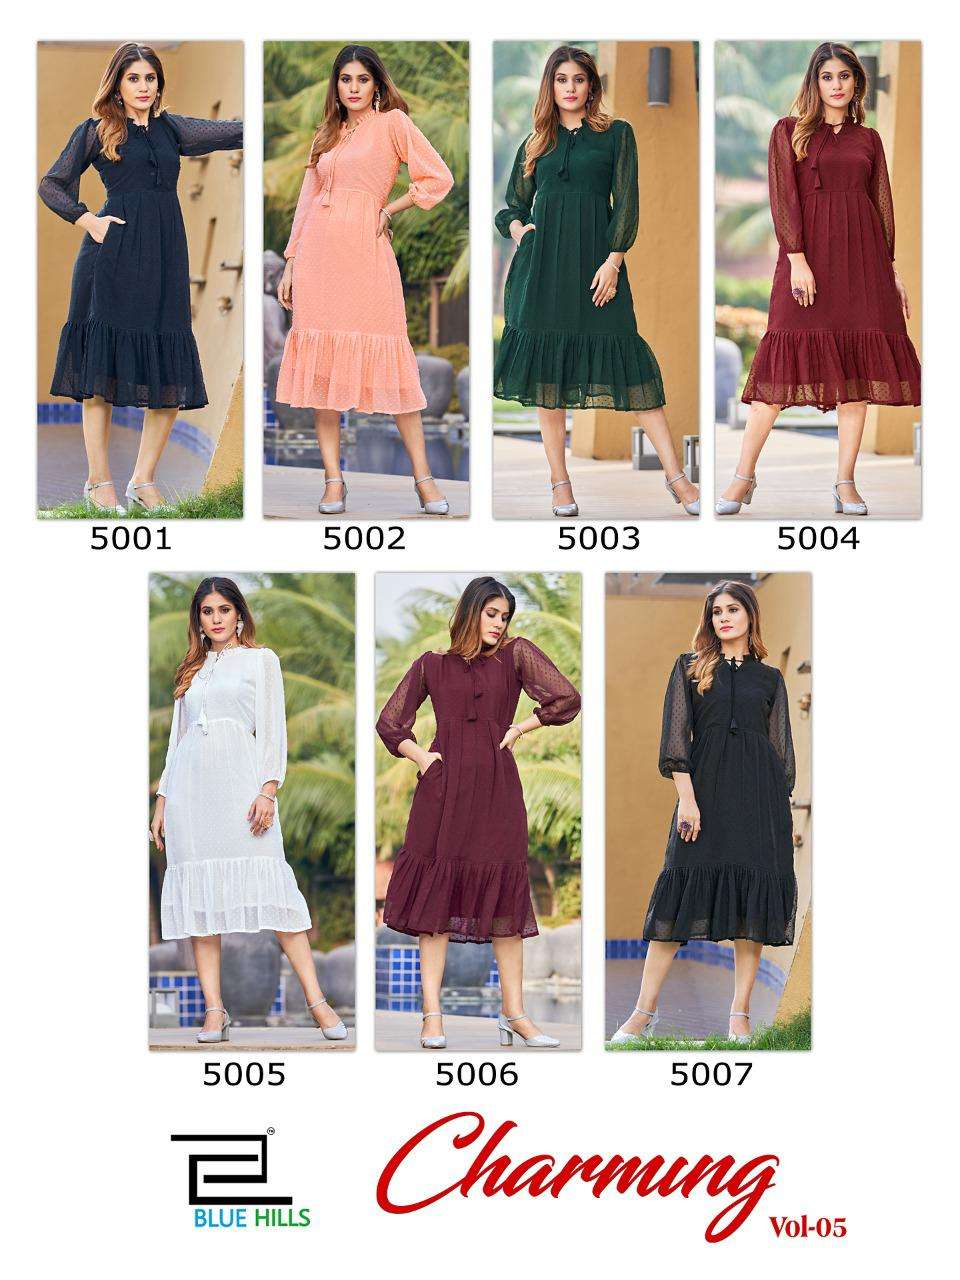 bluehills charming vol-5 5001-5007 series trendy designer tunic style kurtis manufacturer surat